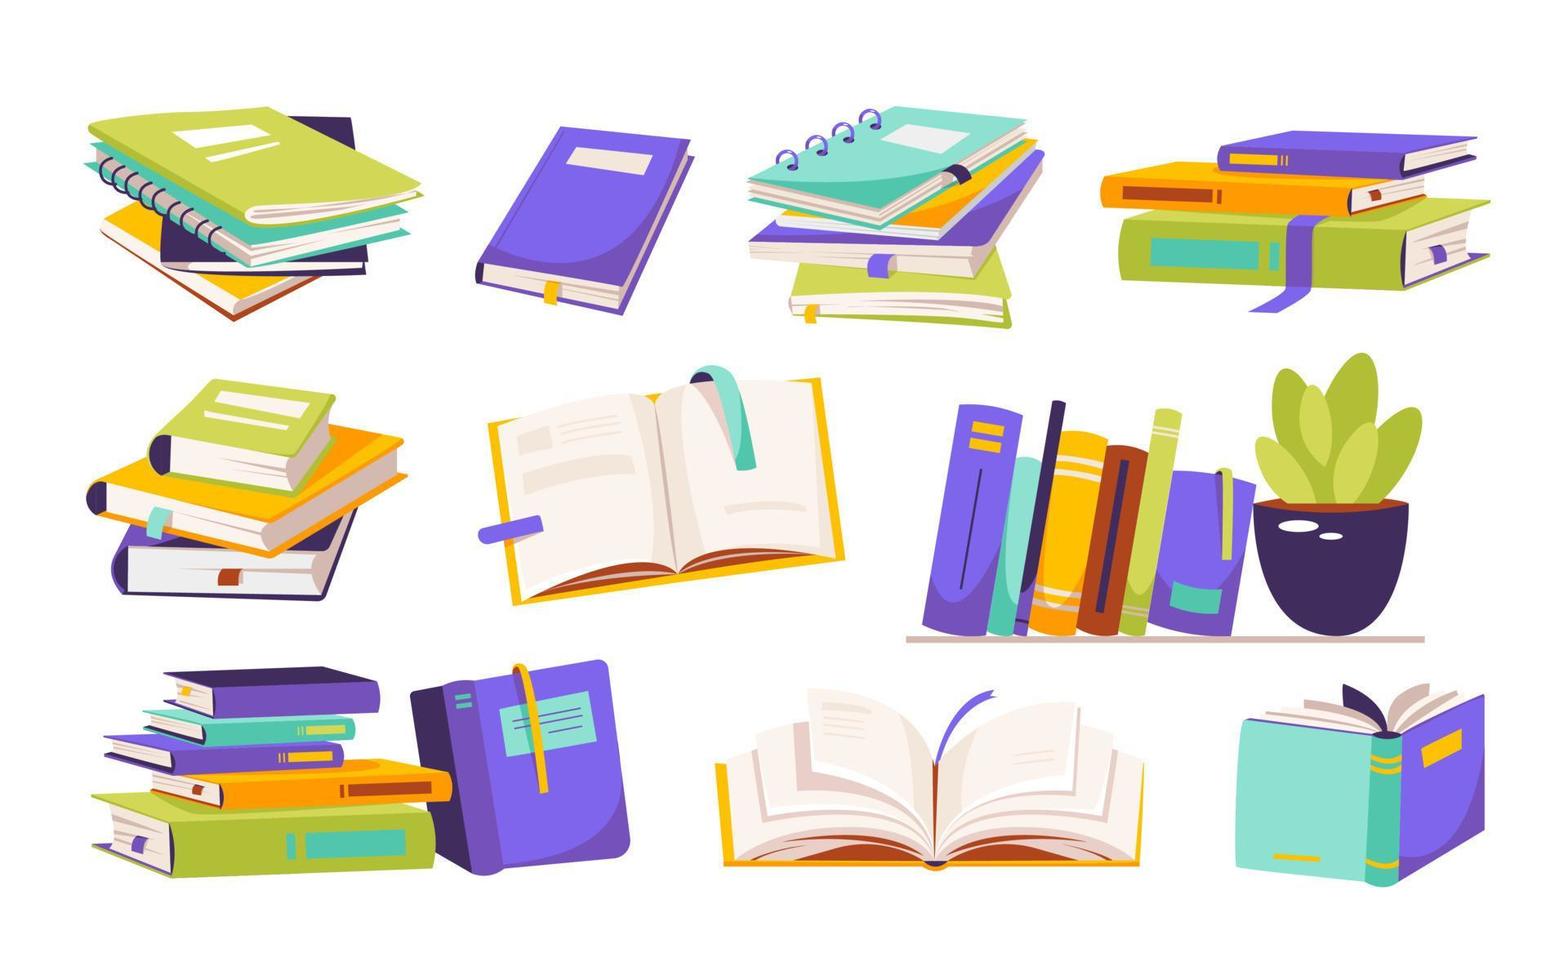 montones de libros para leer. un conjunto de literatura, libros de texto, diccionarios, planificadores con marcadores. ilustración de vector plano de color aislado en un fondo blanco